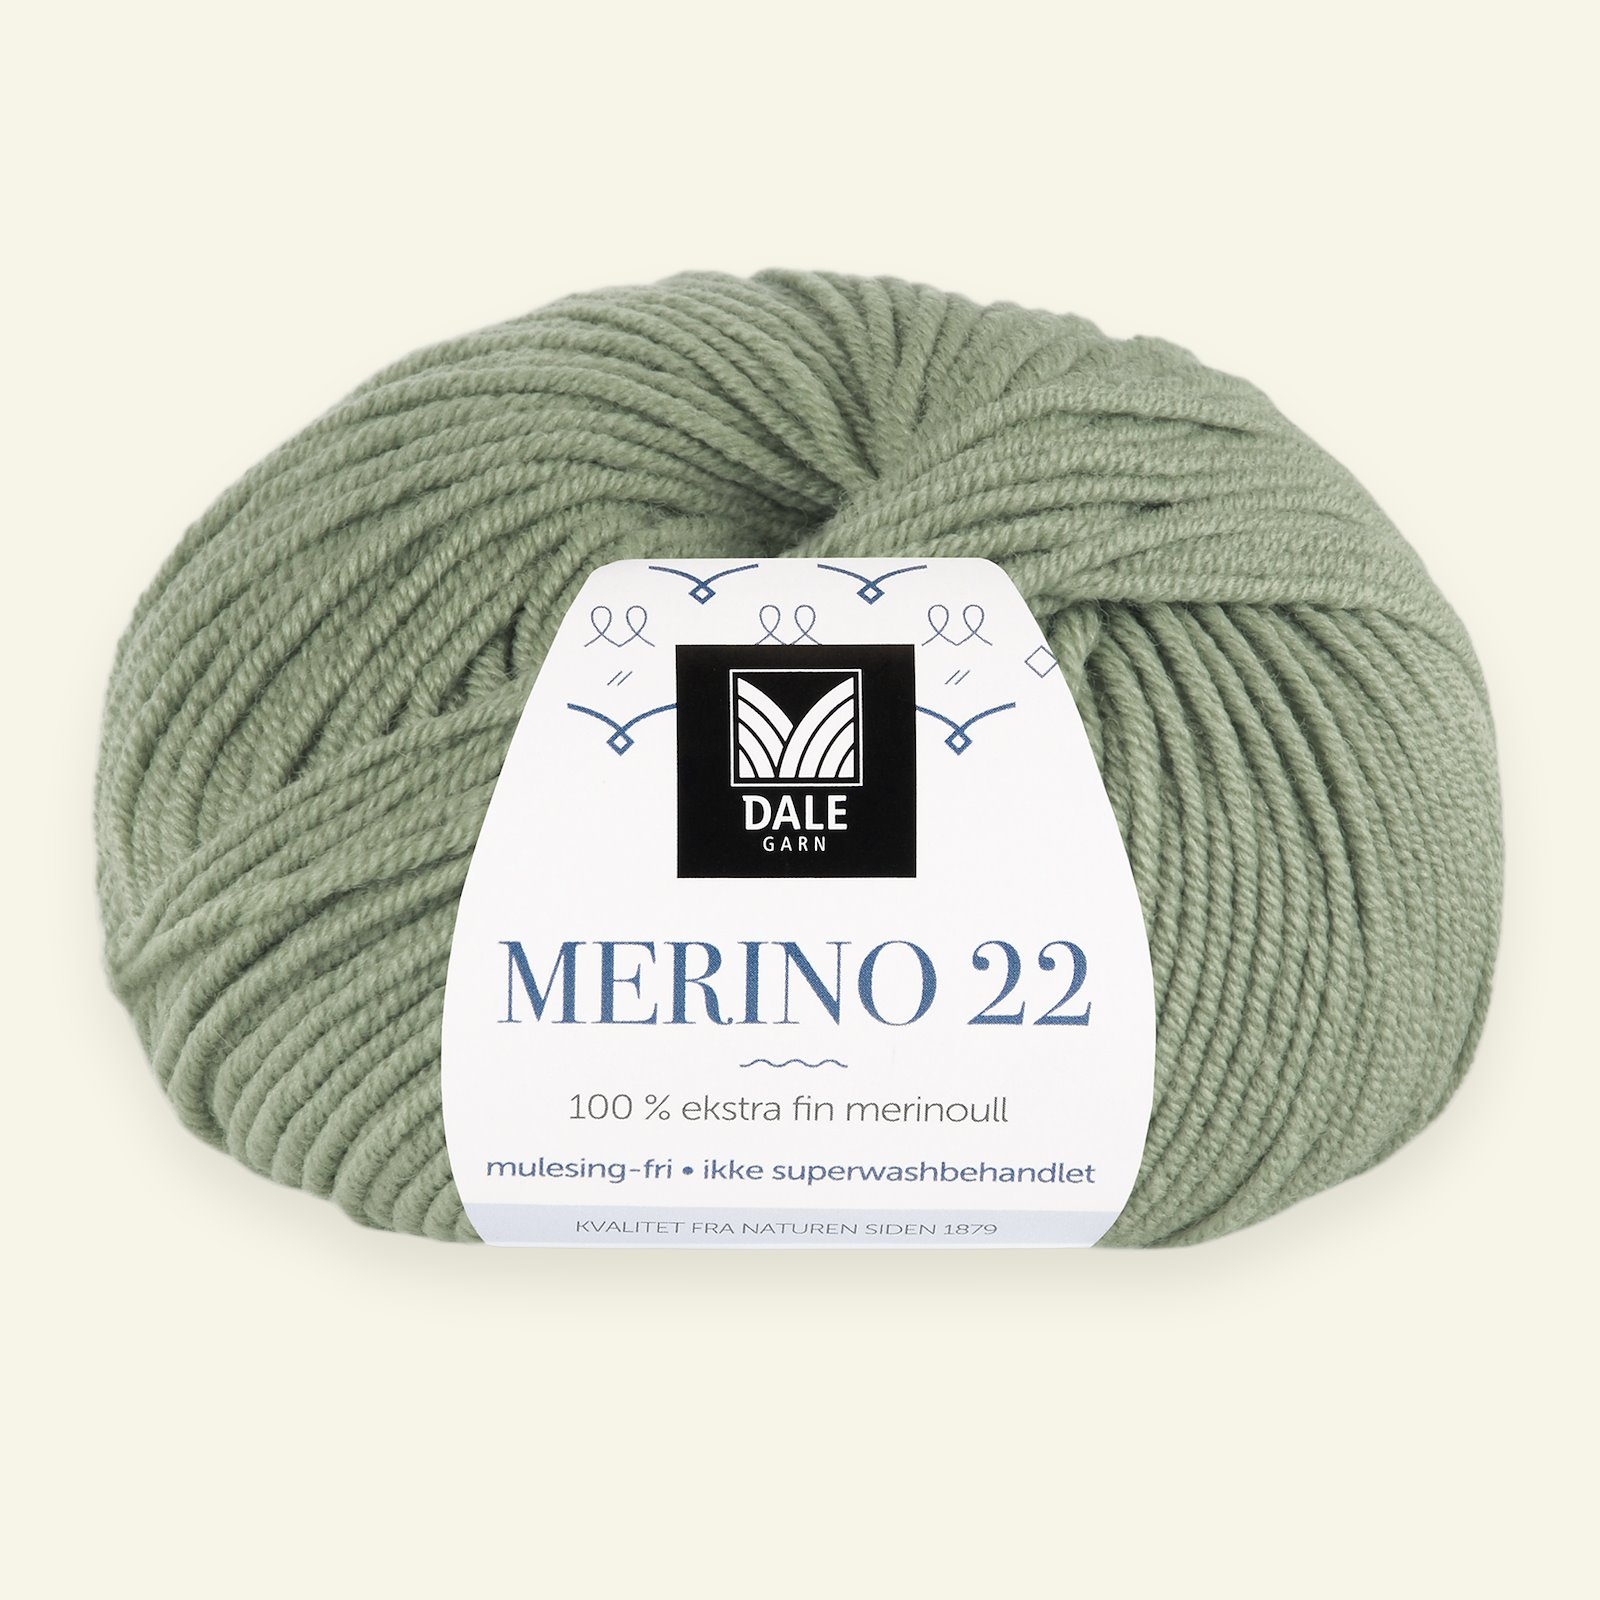 Dale Garn, 100% ekstra fint merinogarn "Merino 22", Jadegrønn (2013) 90000374_pack